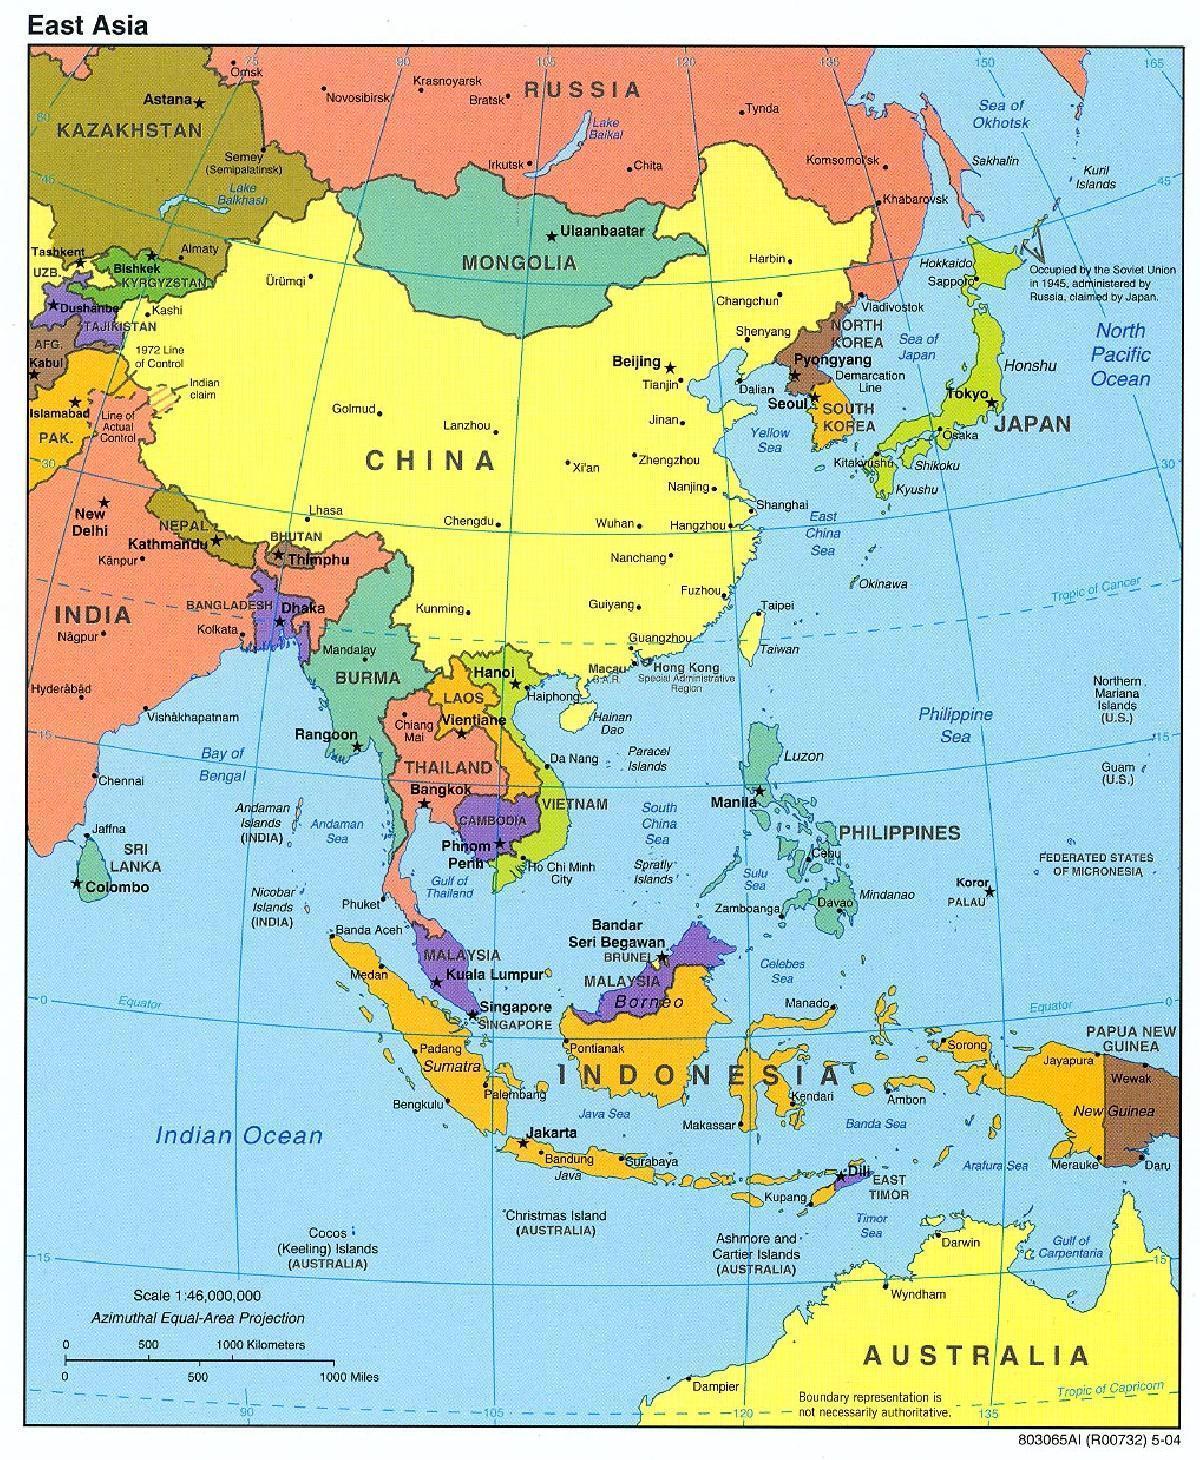 El futuro del orden regional en Asia Oriental